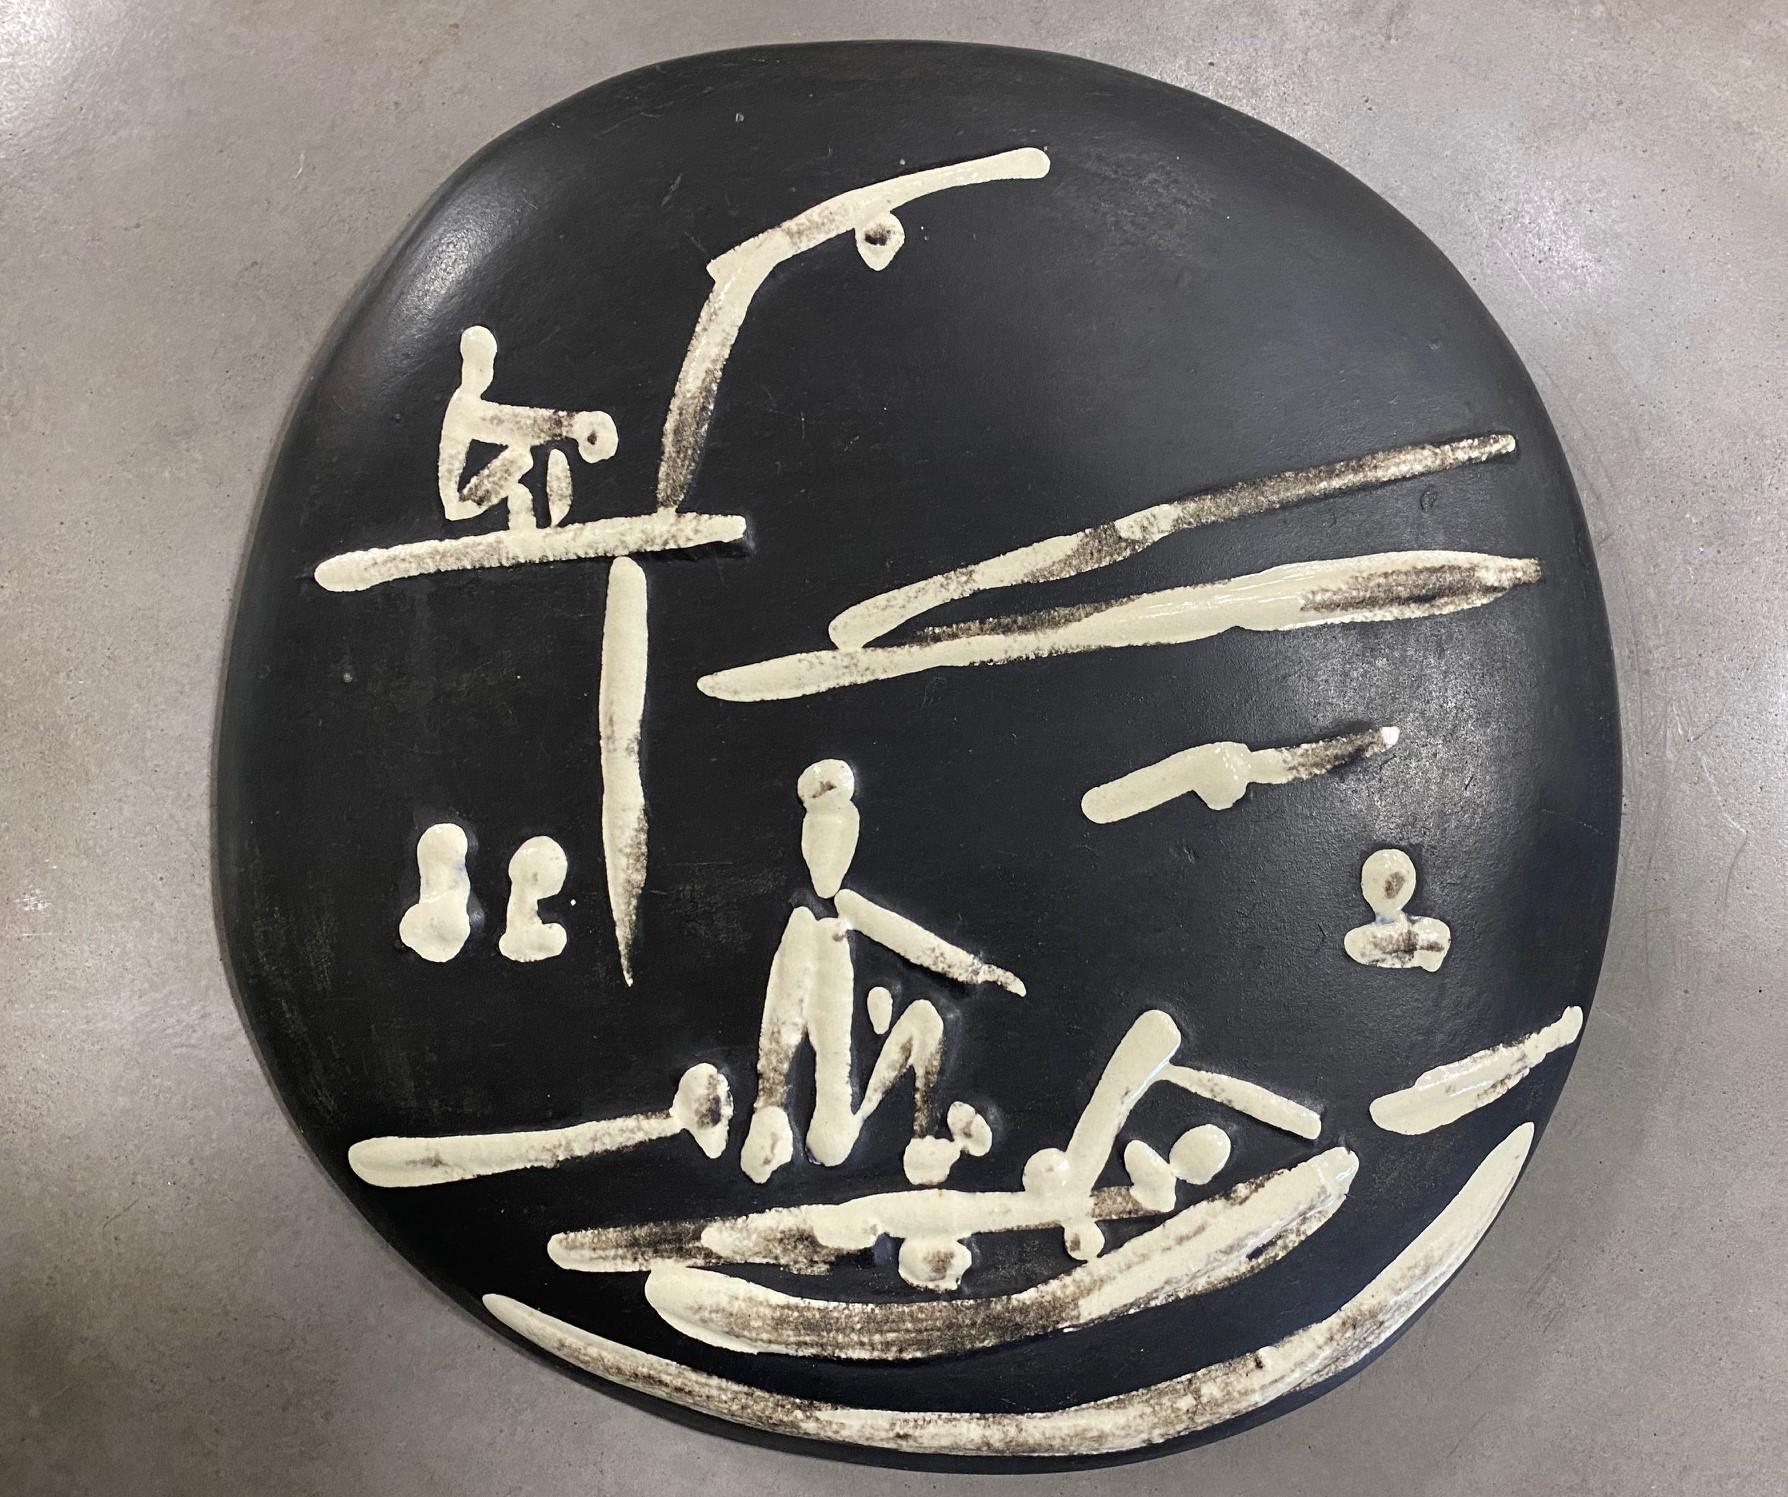 Pablo Picasso Signed Ceramic Plate, Scène De Plage Edition Picasso Madoura, 1956 For Sale 1